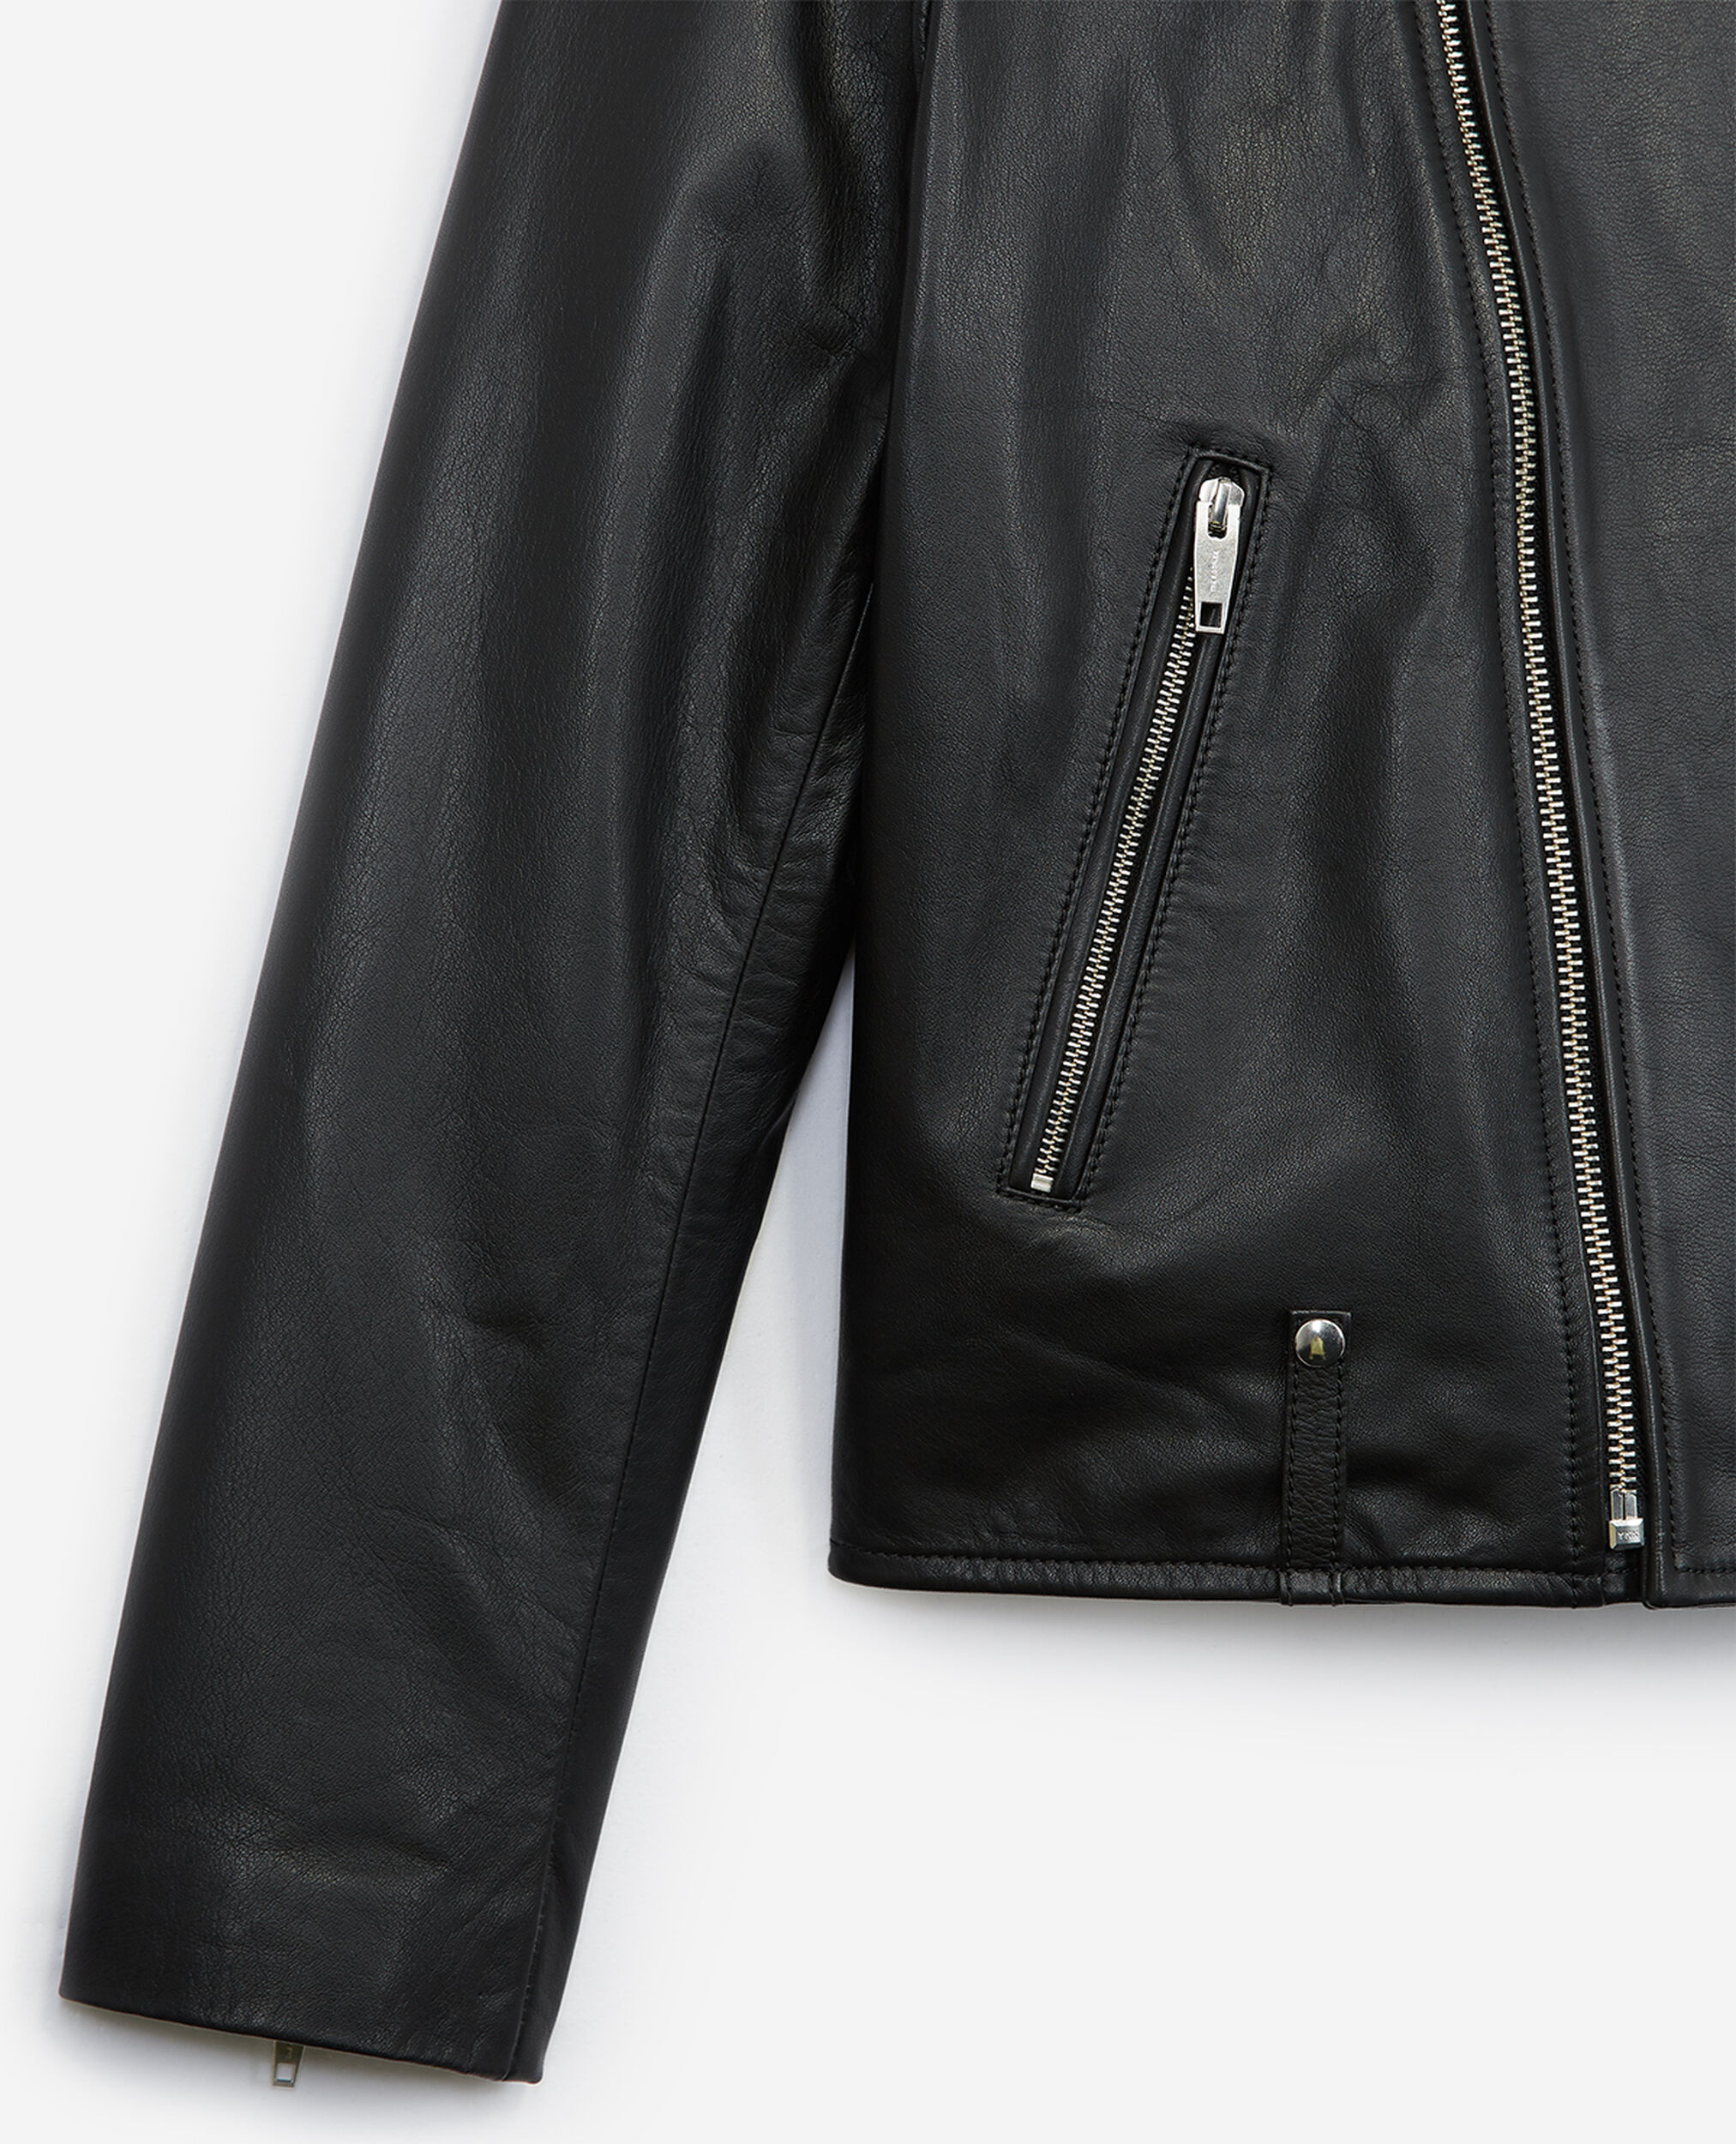 Black leather biker jacket with biker collar, BLACK, hi-res image number null